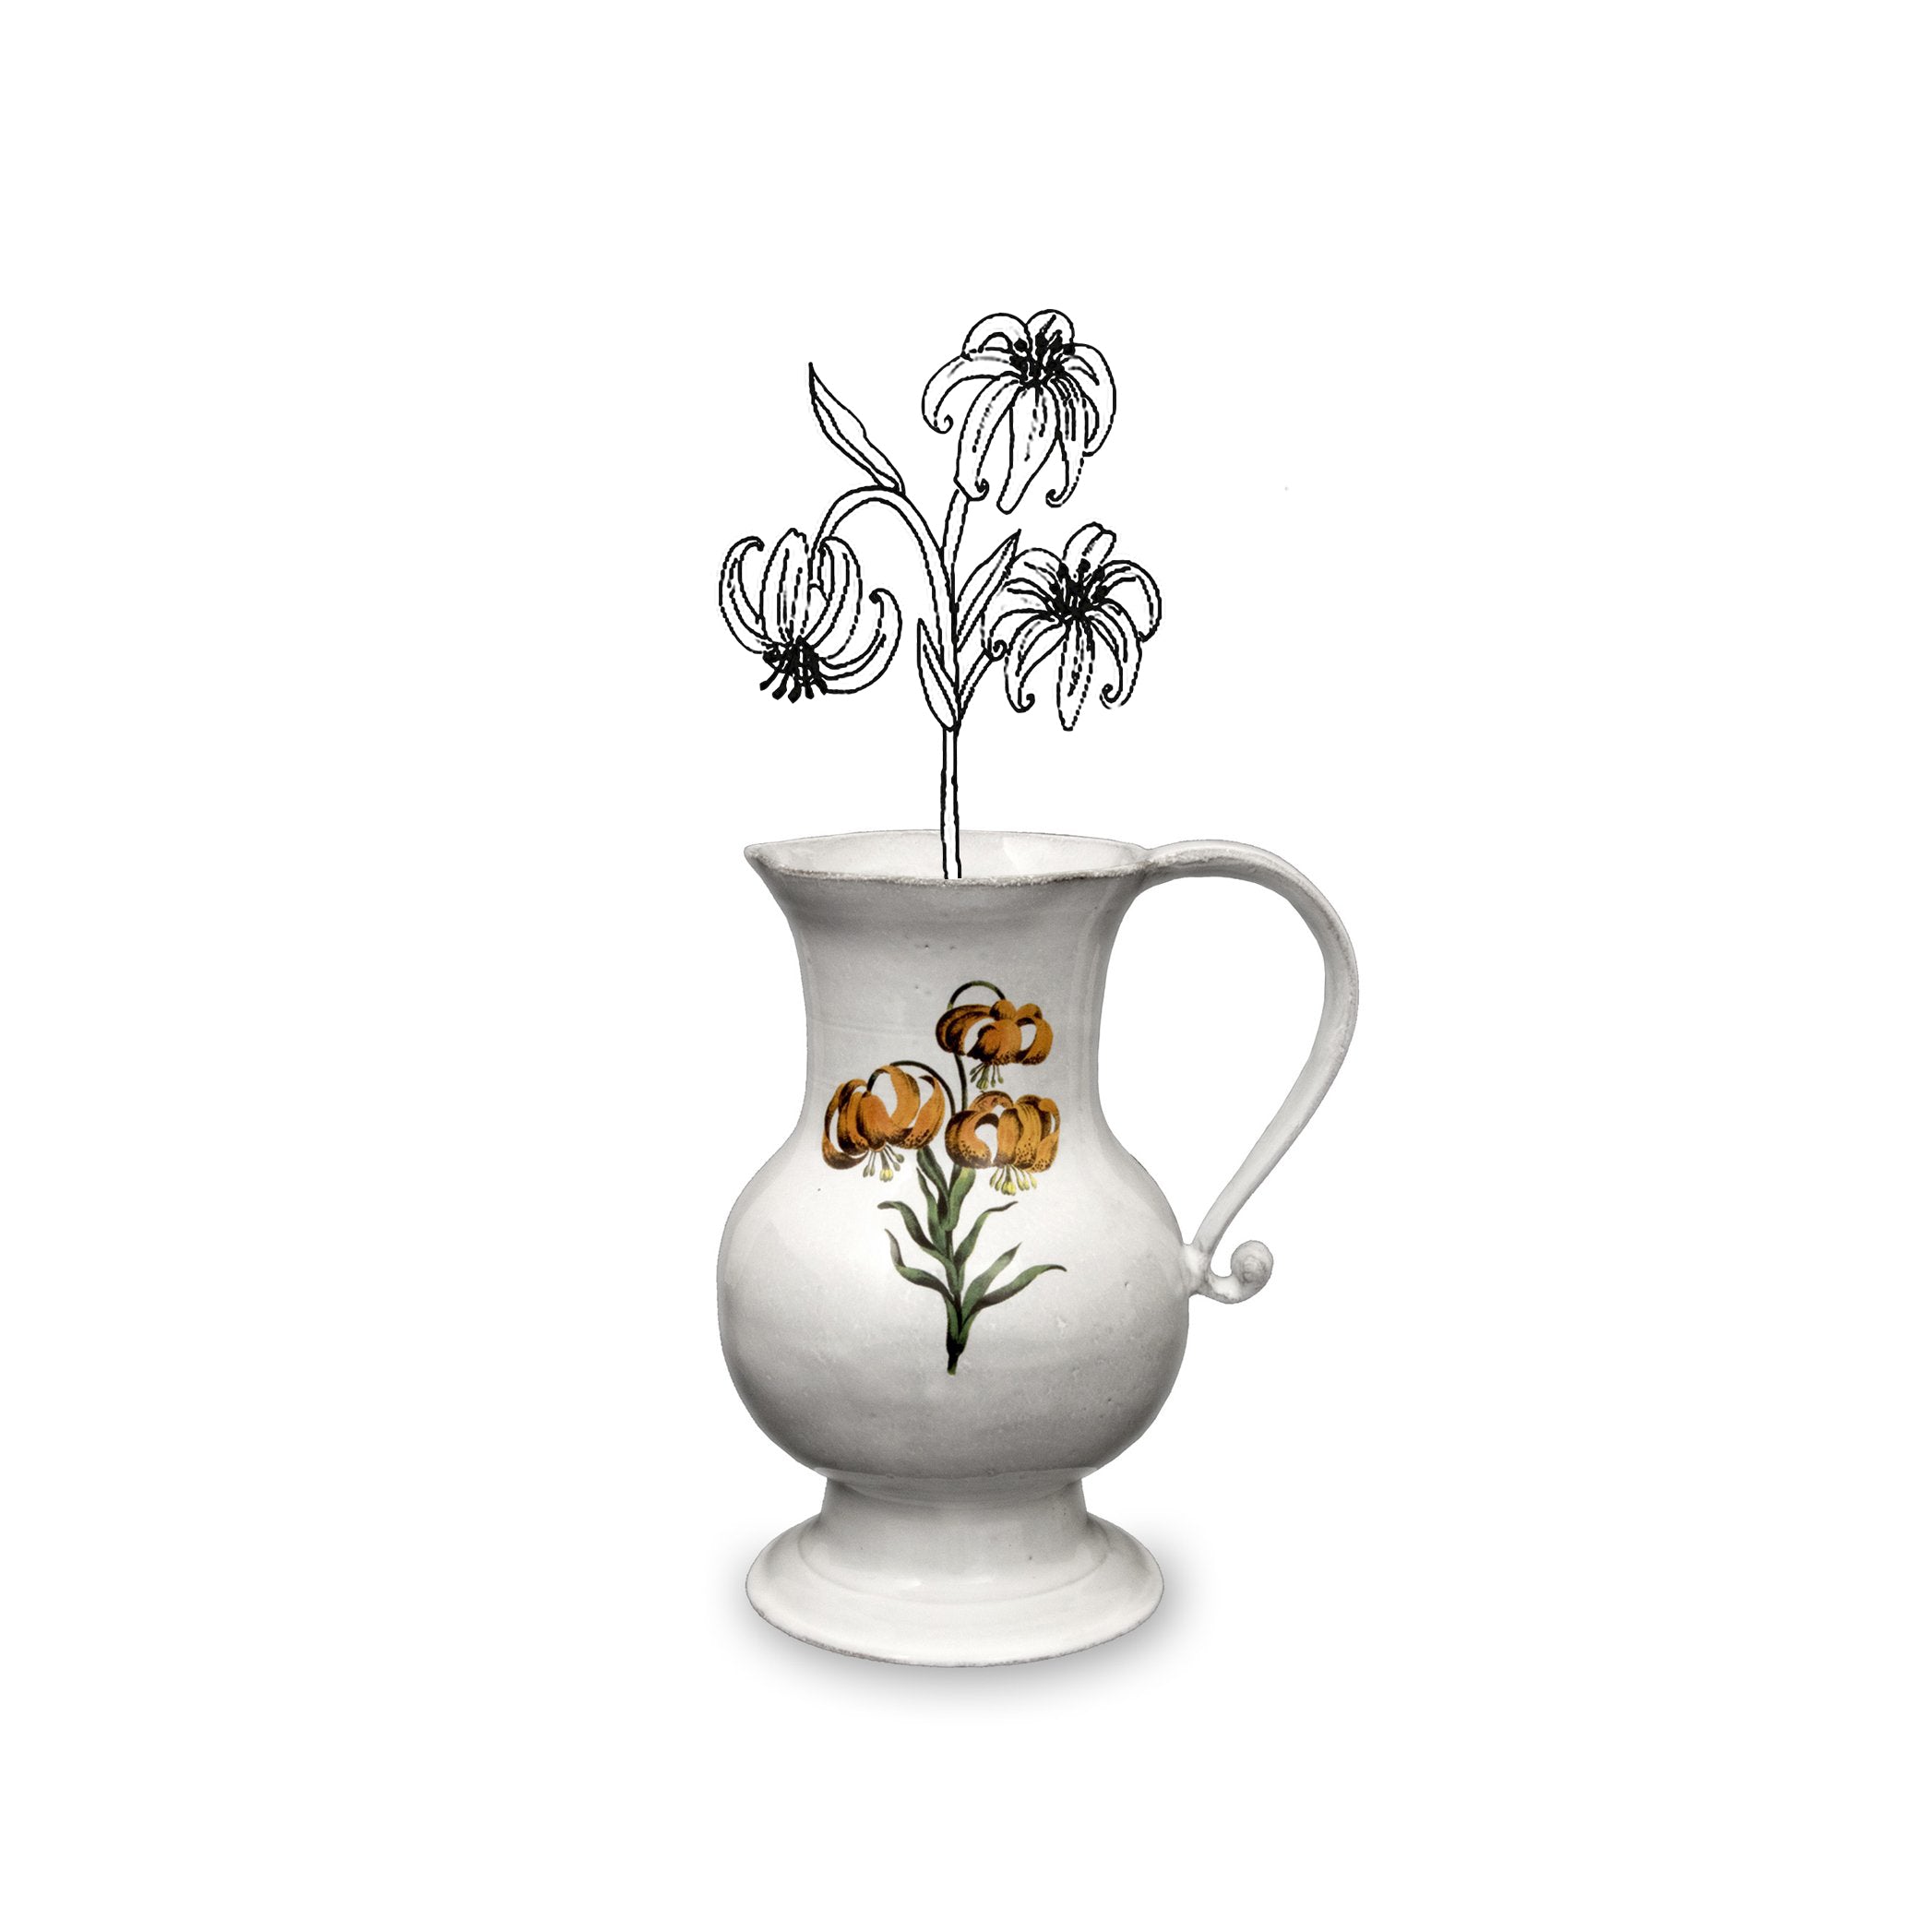 Mountain Lily Vase by Astier de Villatte, 18.5cm